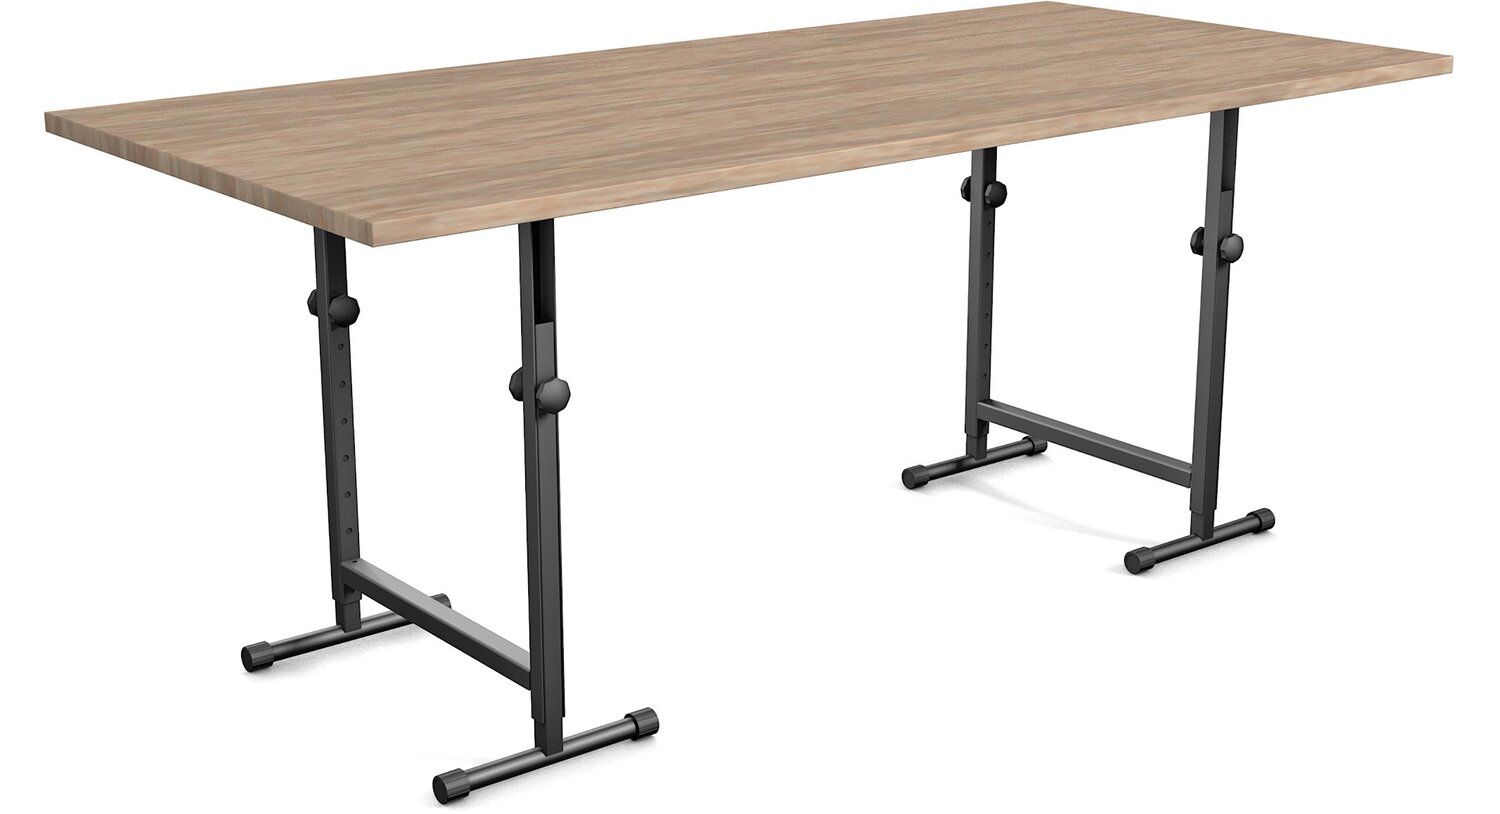 столы с регулировкой по высоте в наличии